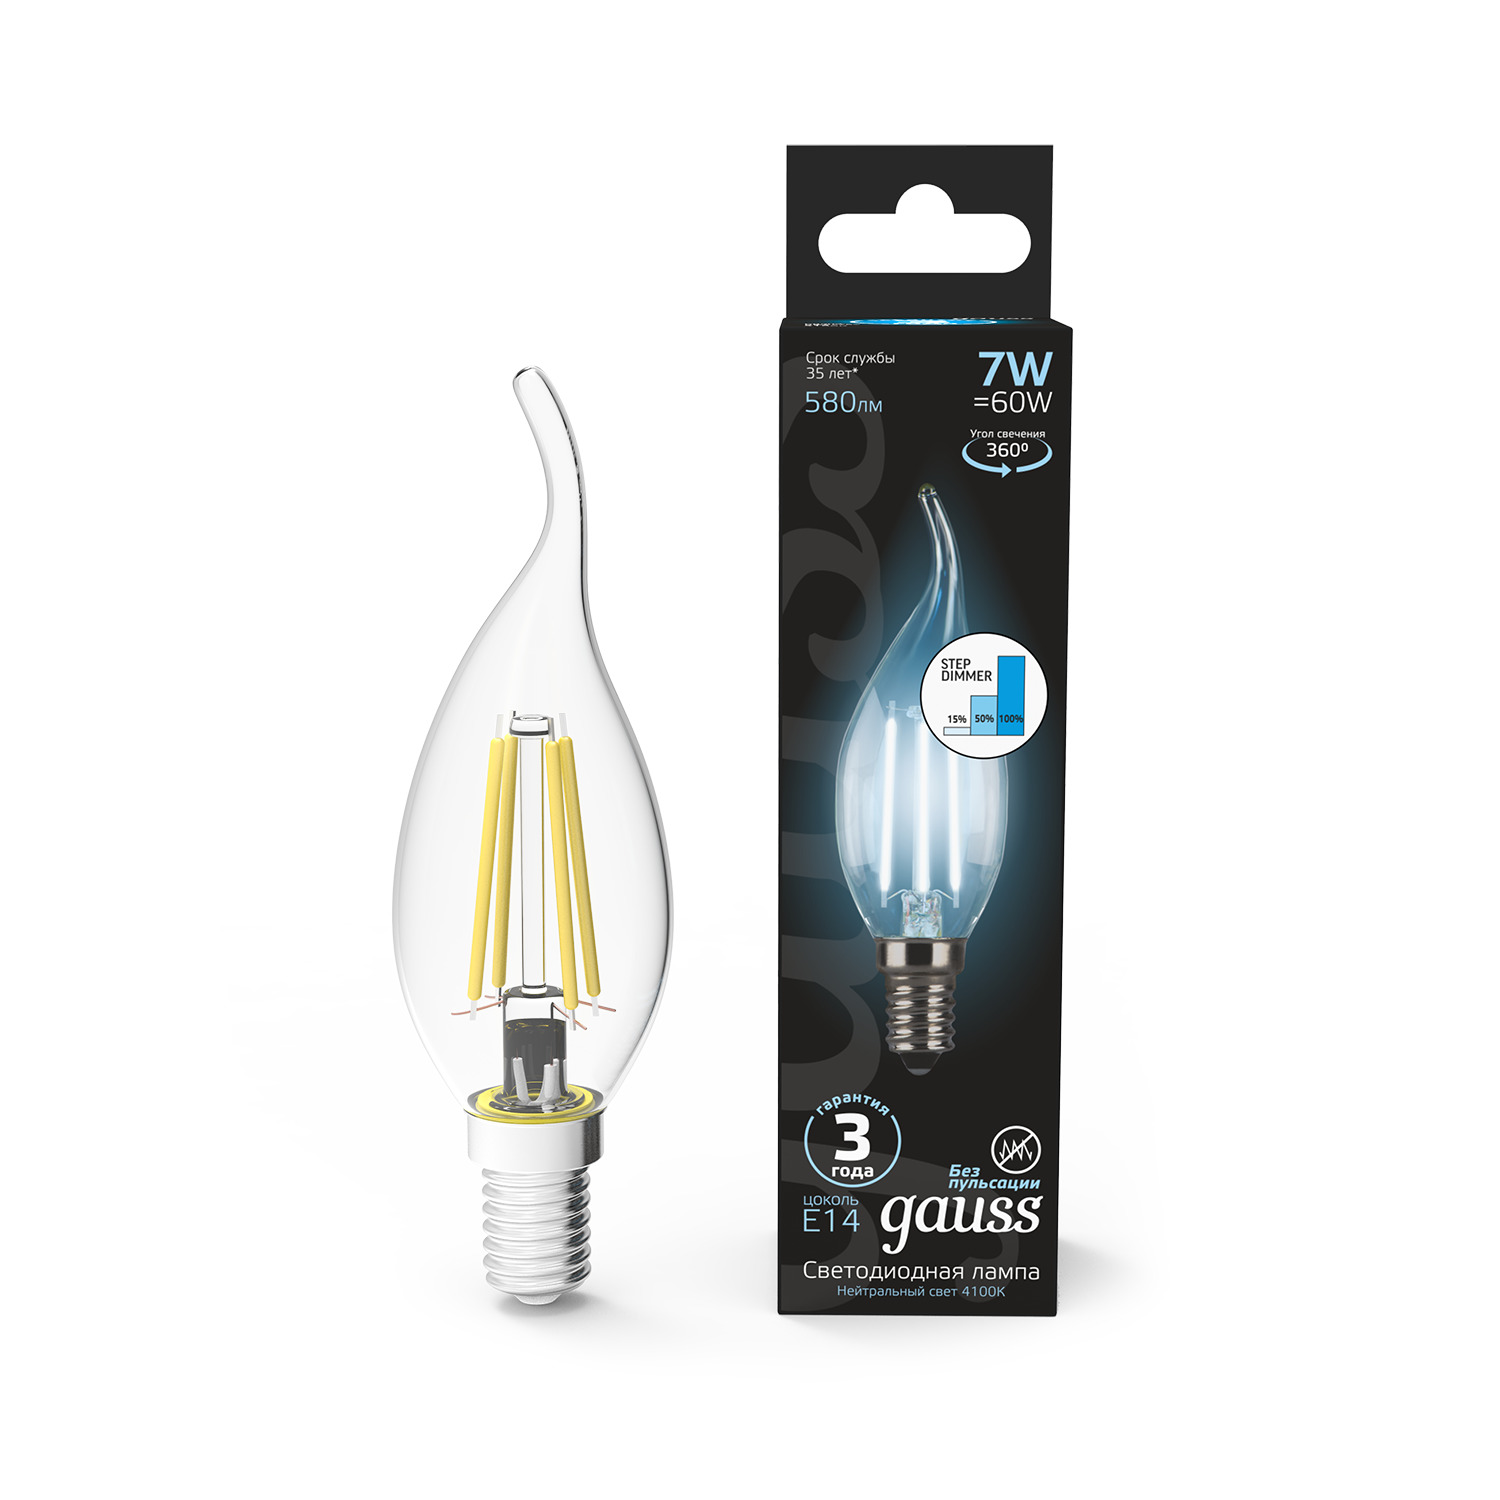 Лампа Gauss LED Filament Свеча на ветру E14 7W 580lm 4100K step dimmable 1/10/50 лампа gauss led filament свеча на ветру e14 11w 750lm 4100k 1 10 50